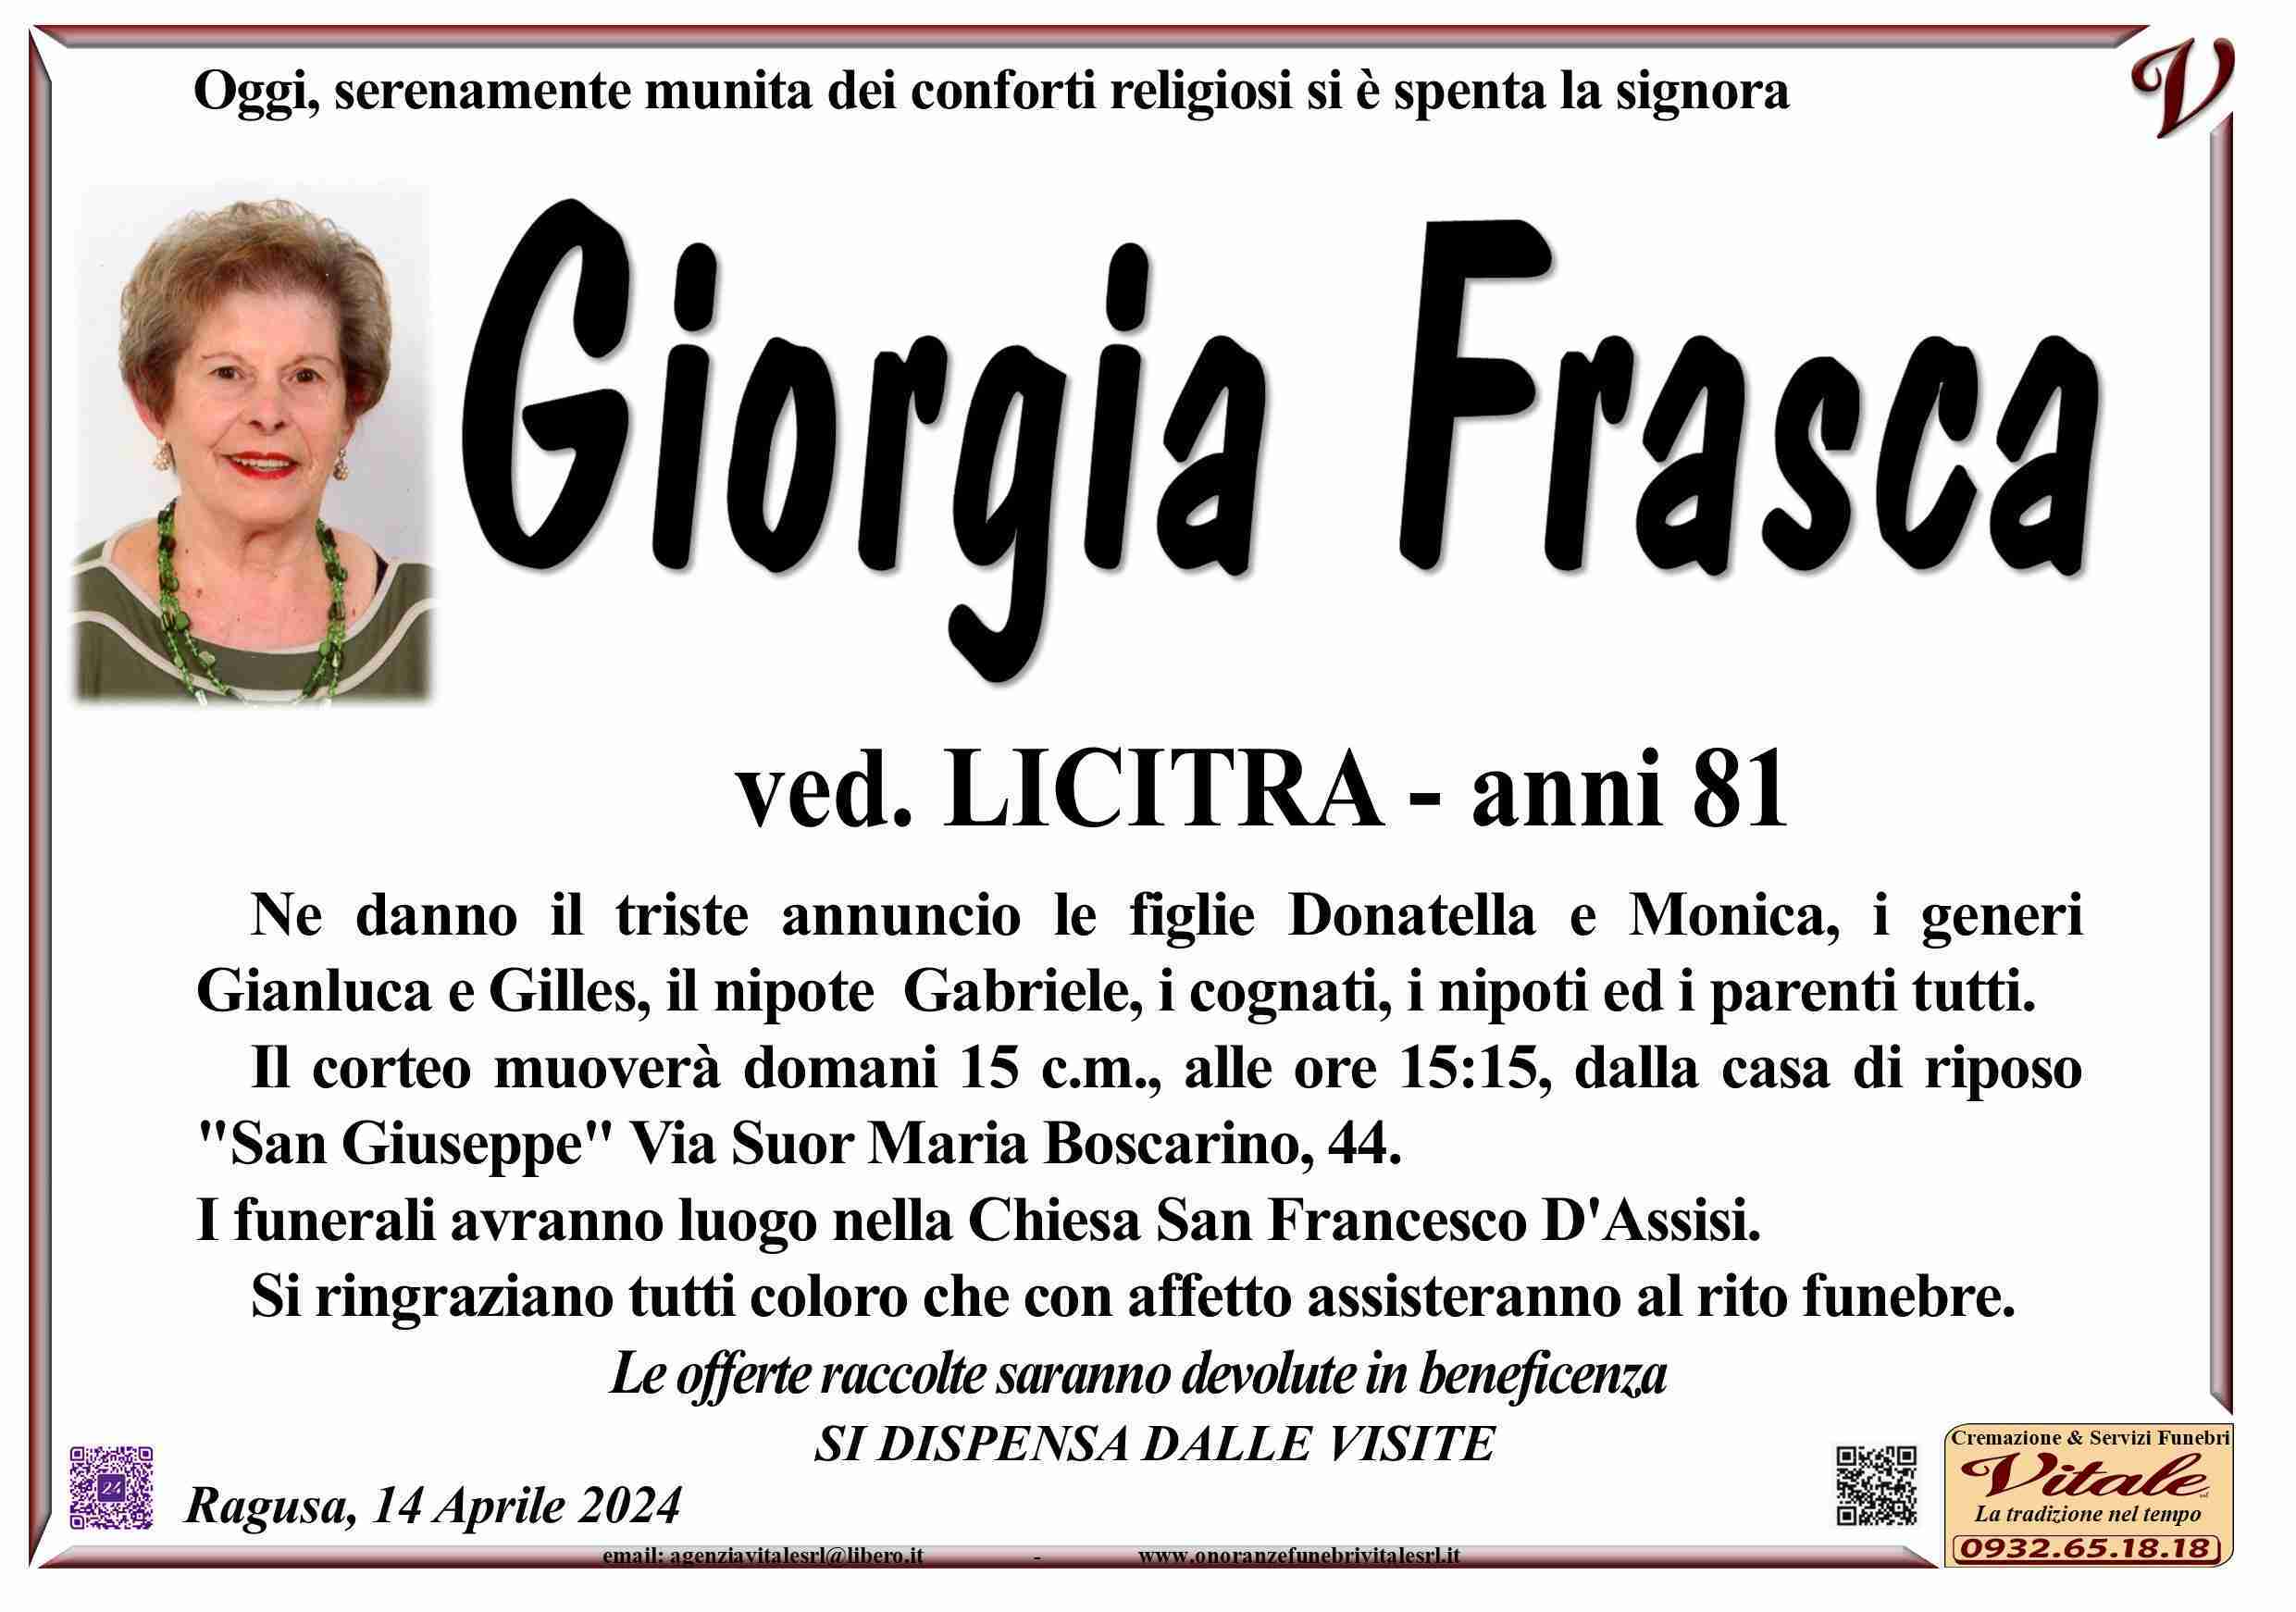 Giorgia Frasca